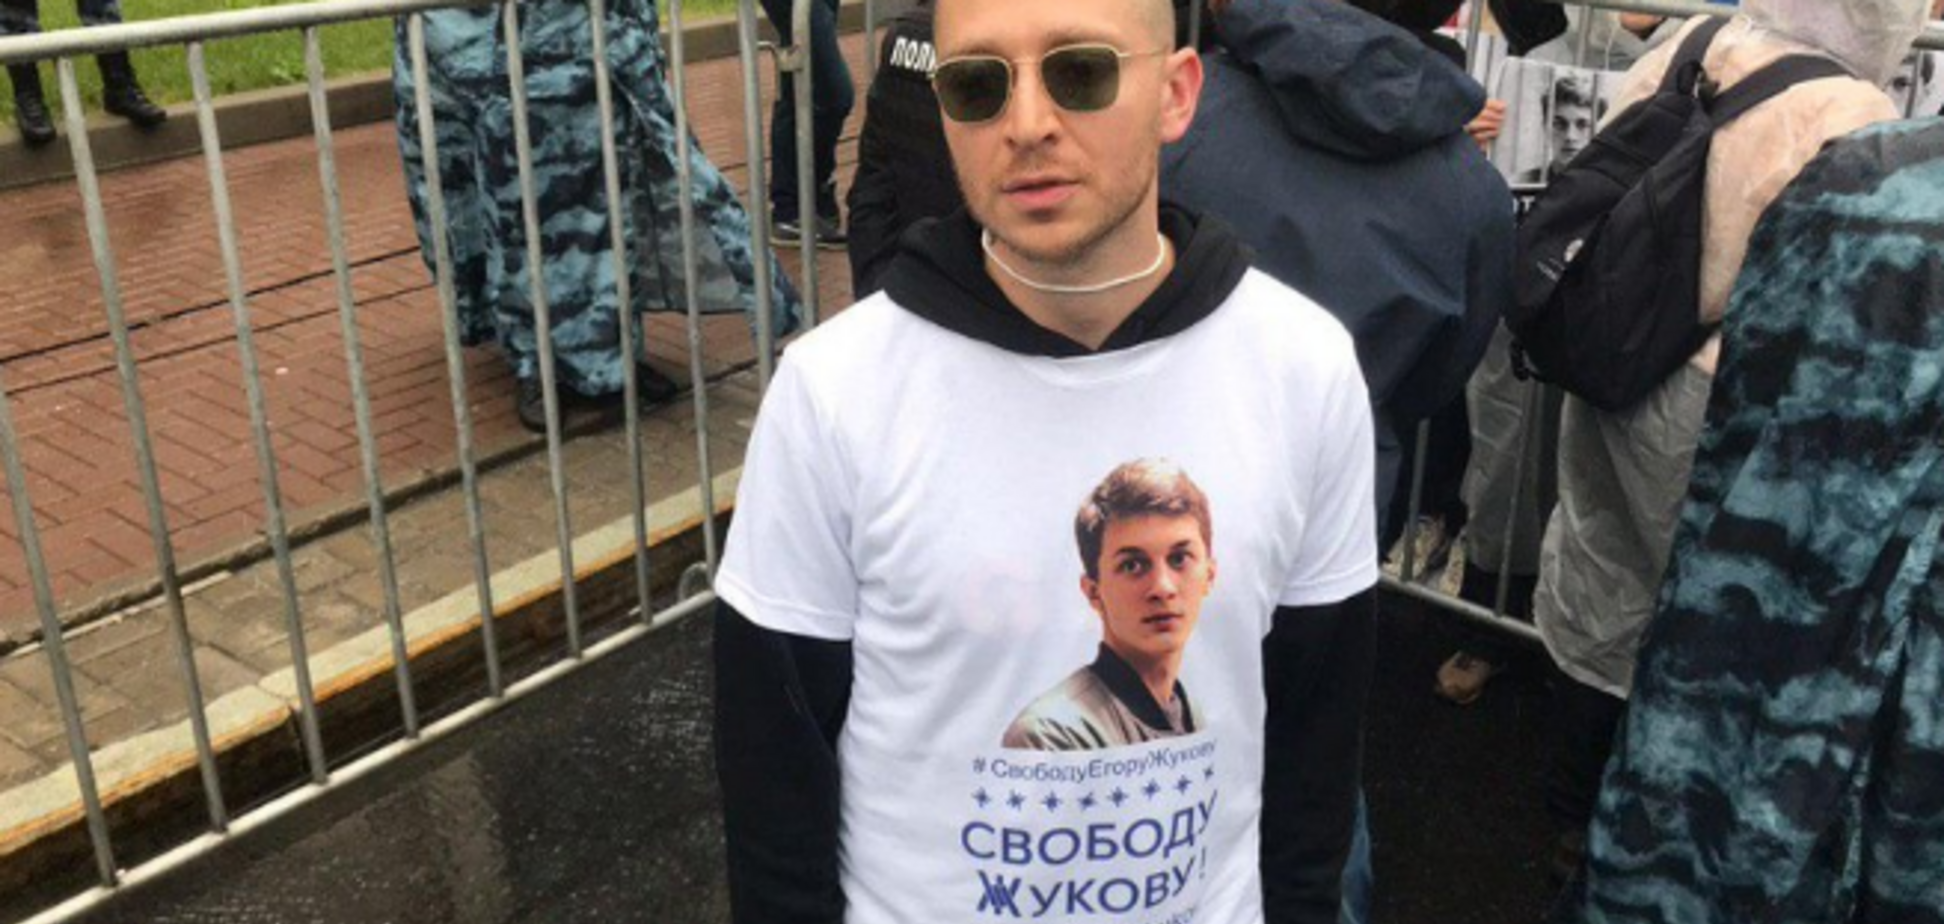 Дудь, Оксимирон и другие: кто из звезд пришел на митинг в Москве